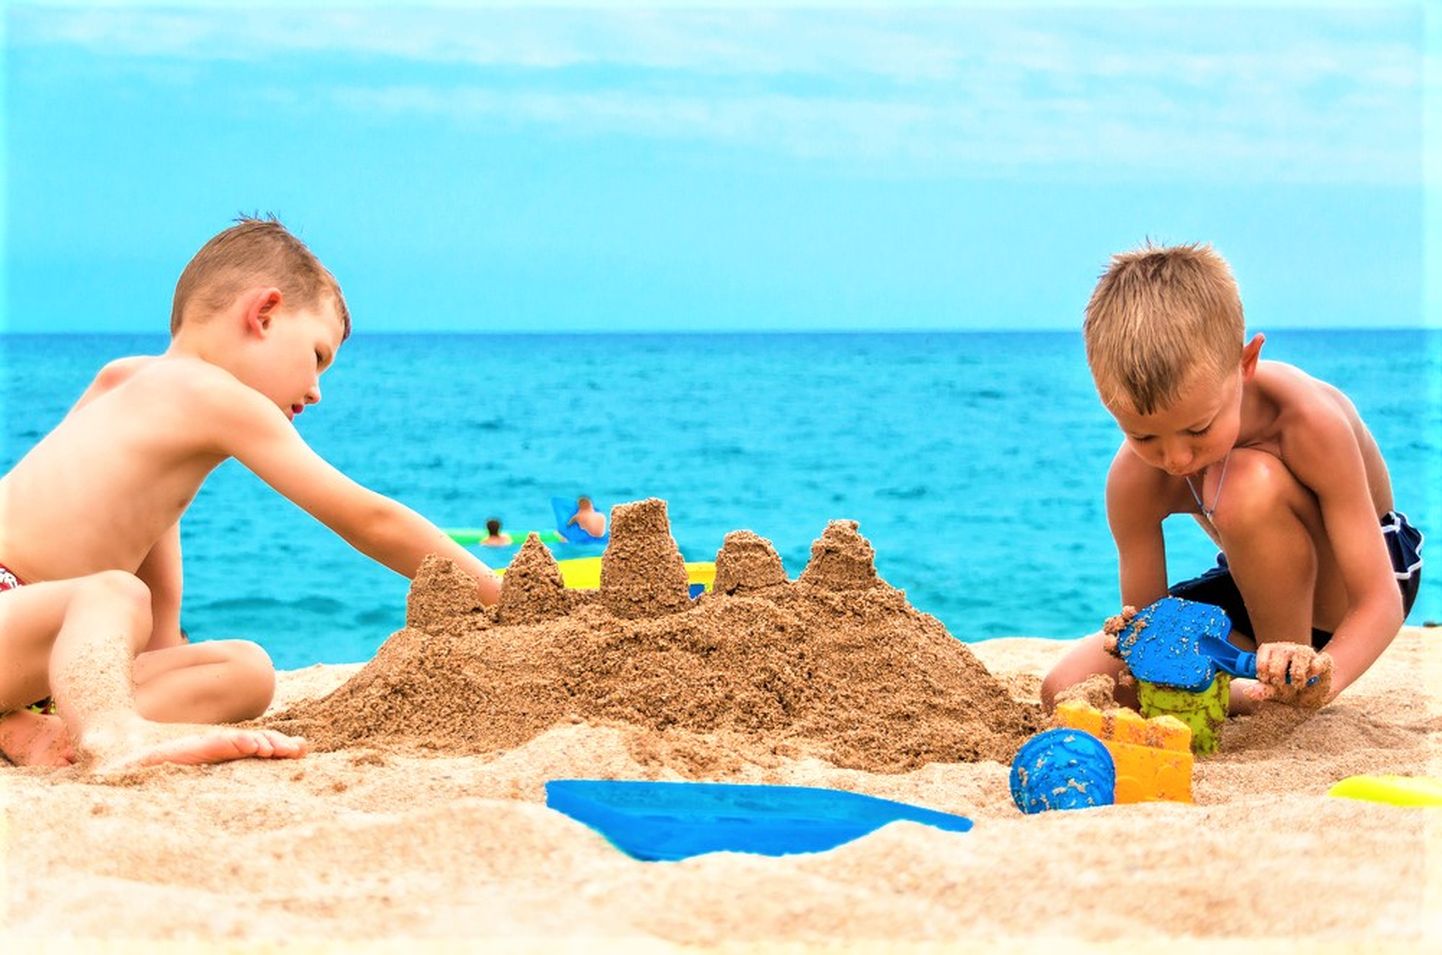 Дети строят песочные замки. Снимок иллюстративный.